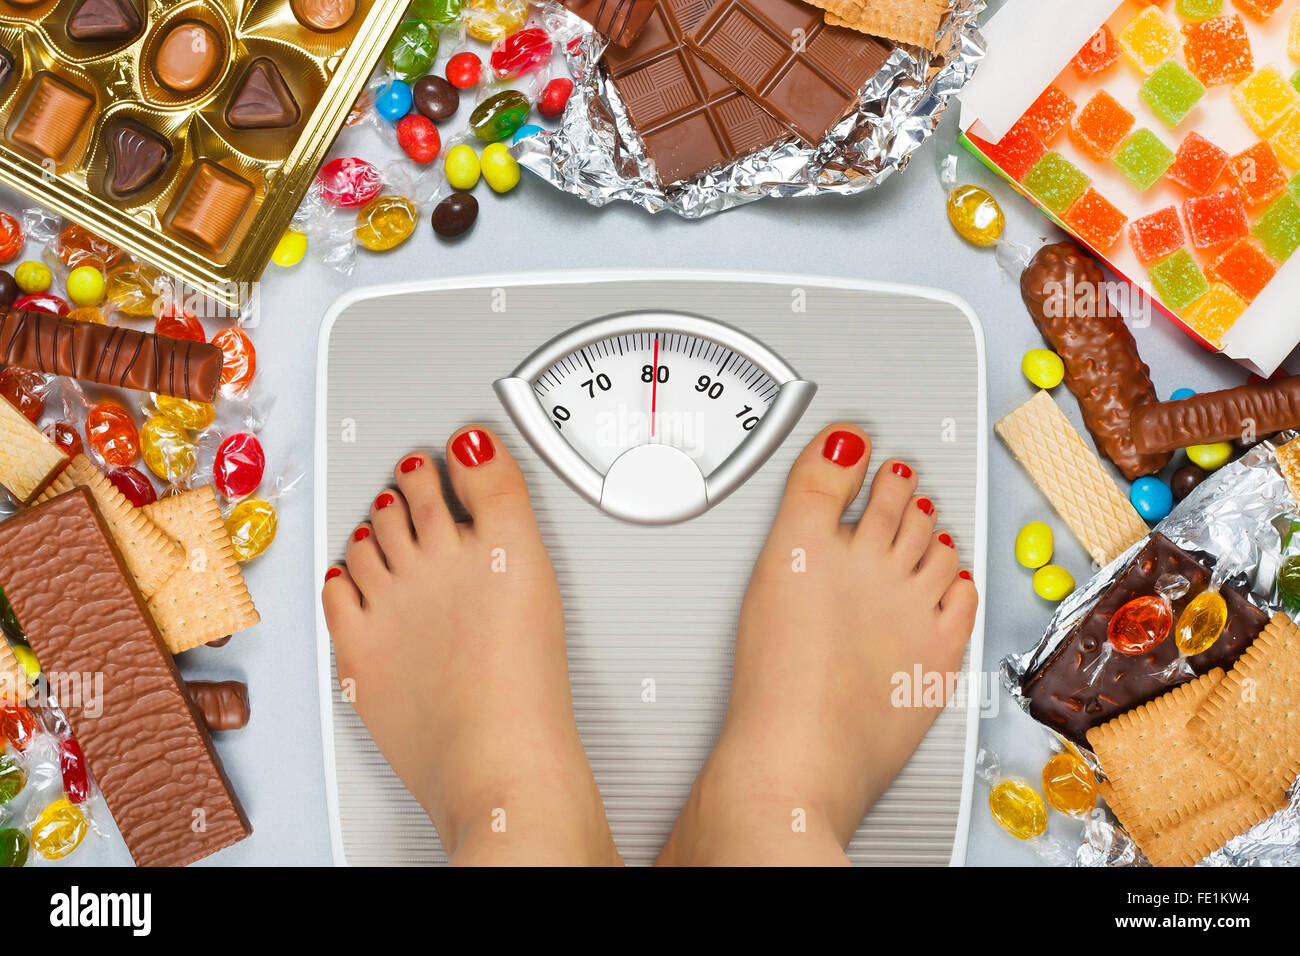 Ungesunde Ernährung - Übergewicht. Füße auf Bad Skala und Schokolade, Gelee-Würfel, Bonbons, Schokoriegel, Cookies, donuts Stockfoto